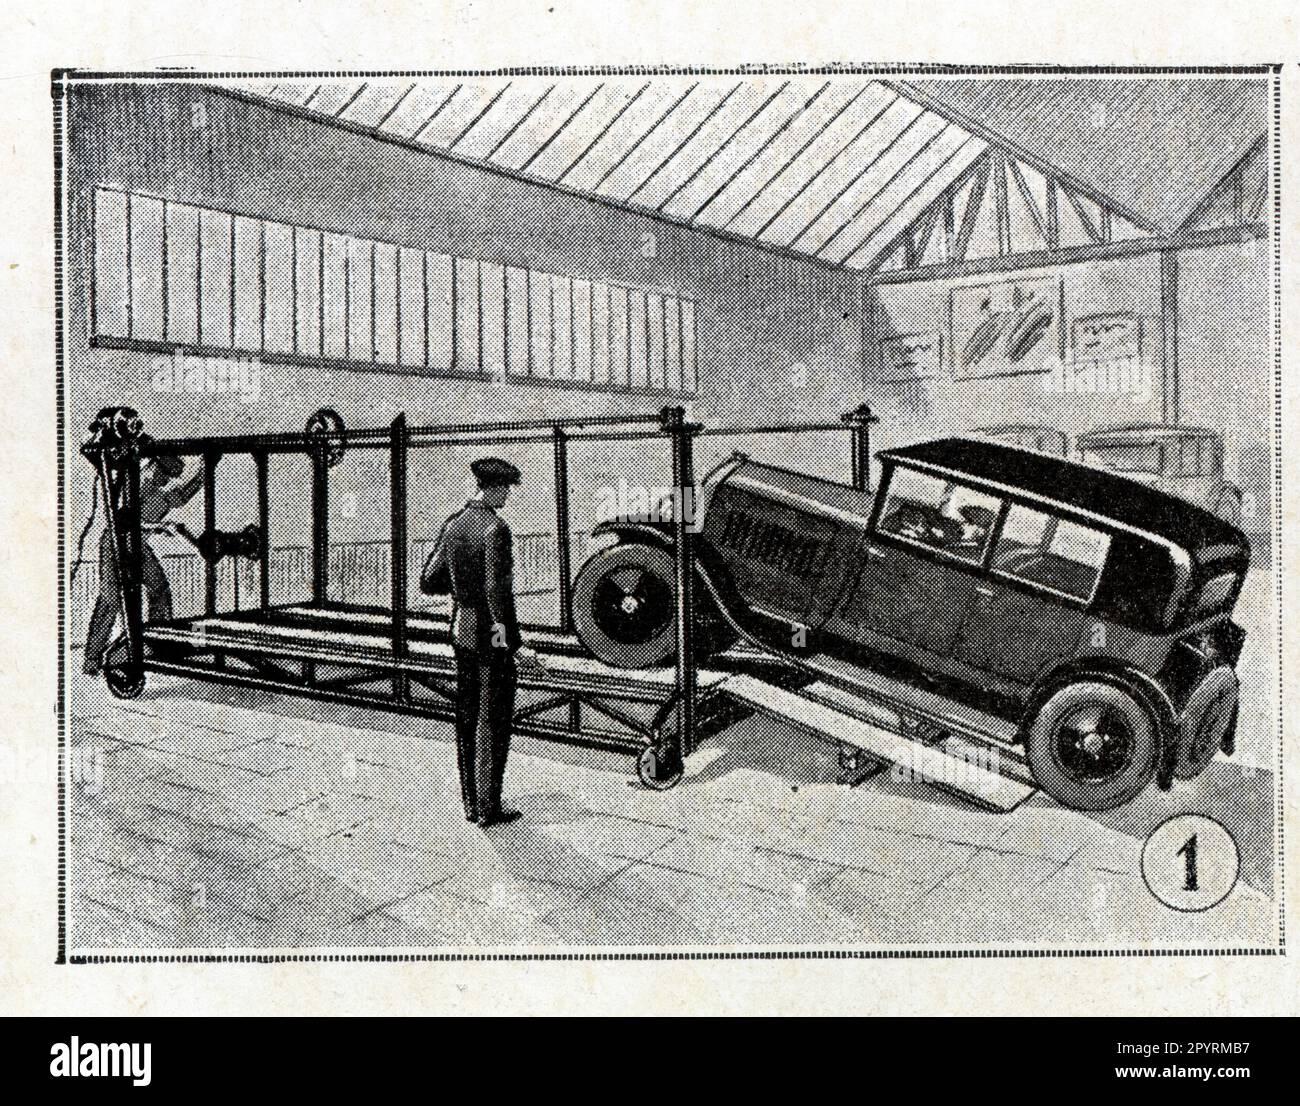 UN élévateur mobile pour ateliers et Garages, système f. Méron, 1929 Stockfoto